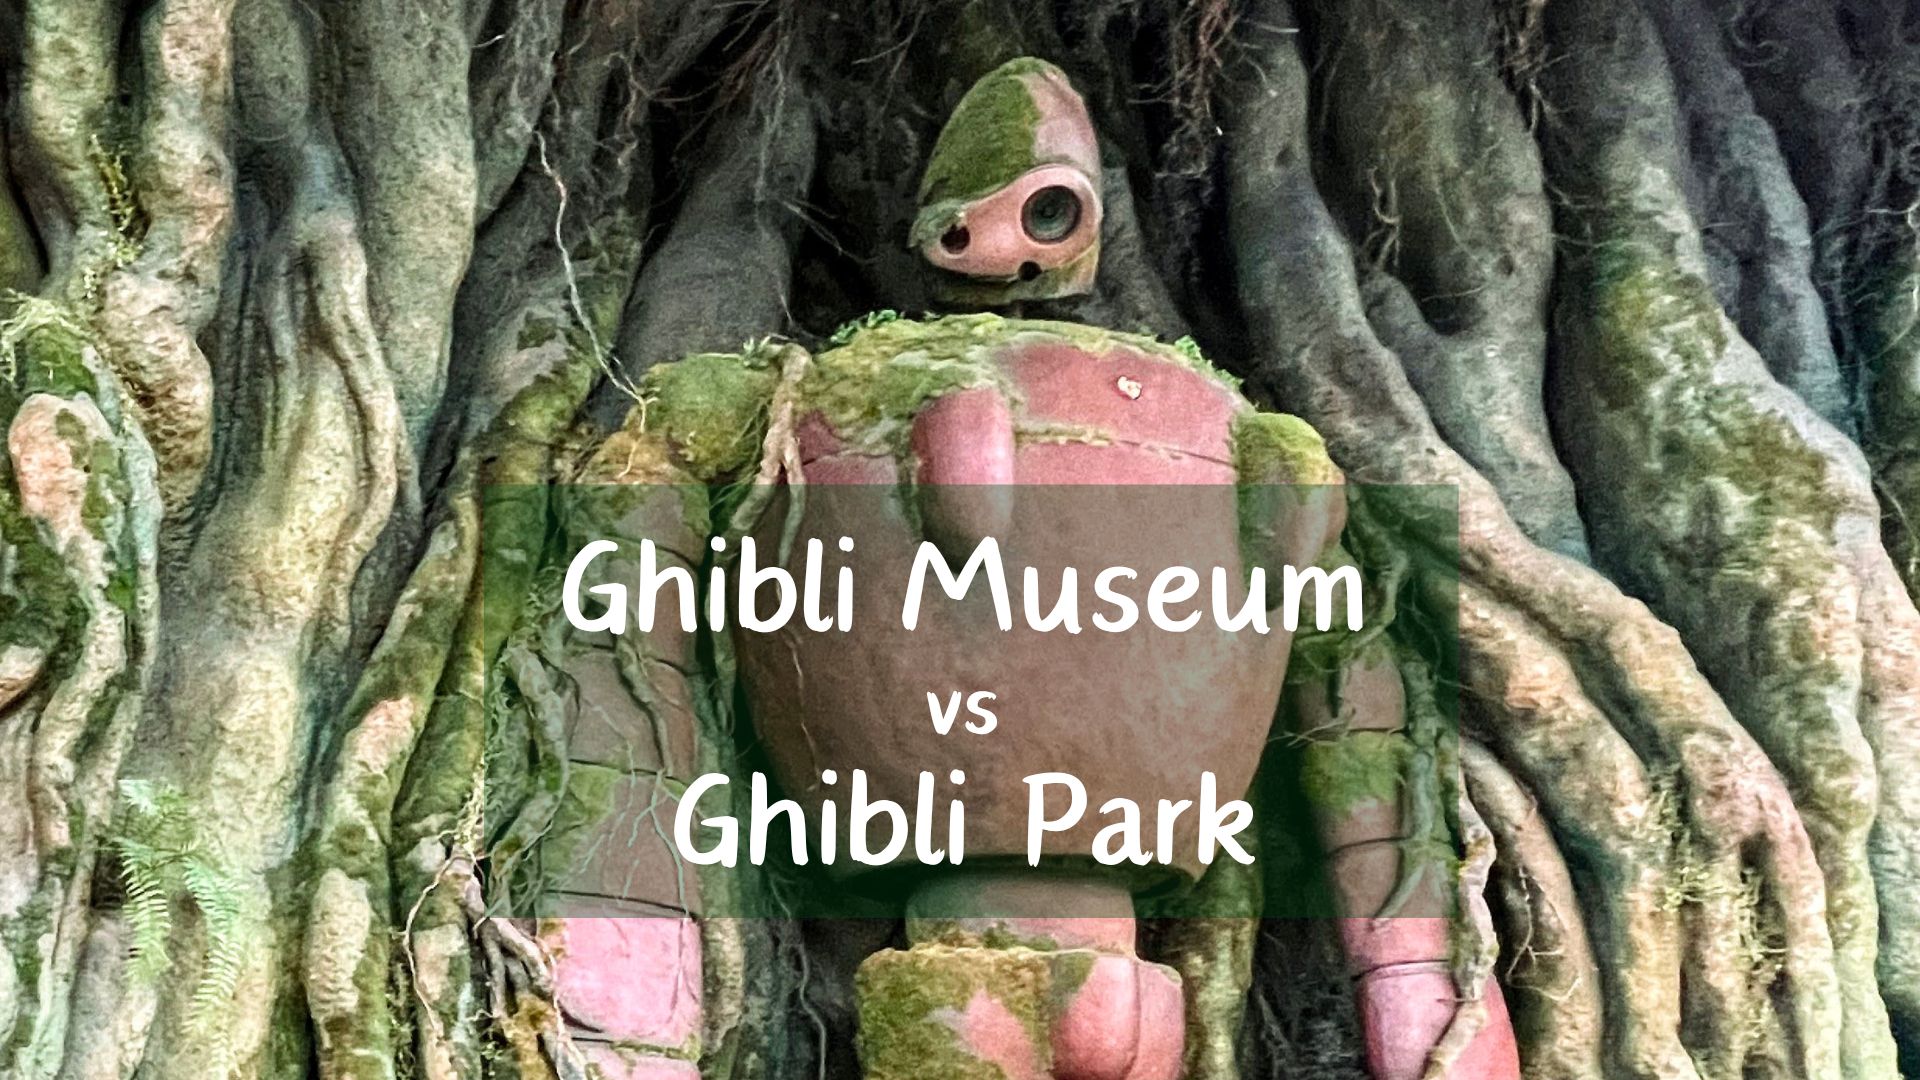 Ghibli Park vs Ghibli Museum, which is better? Studio Ghibli attractions in Japan, Visiting Ghibli Park vs Ghibli Museum, which should you visit? Laputa